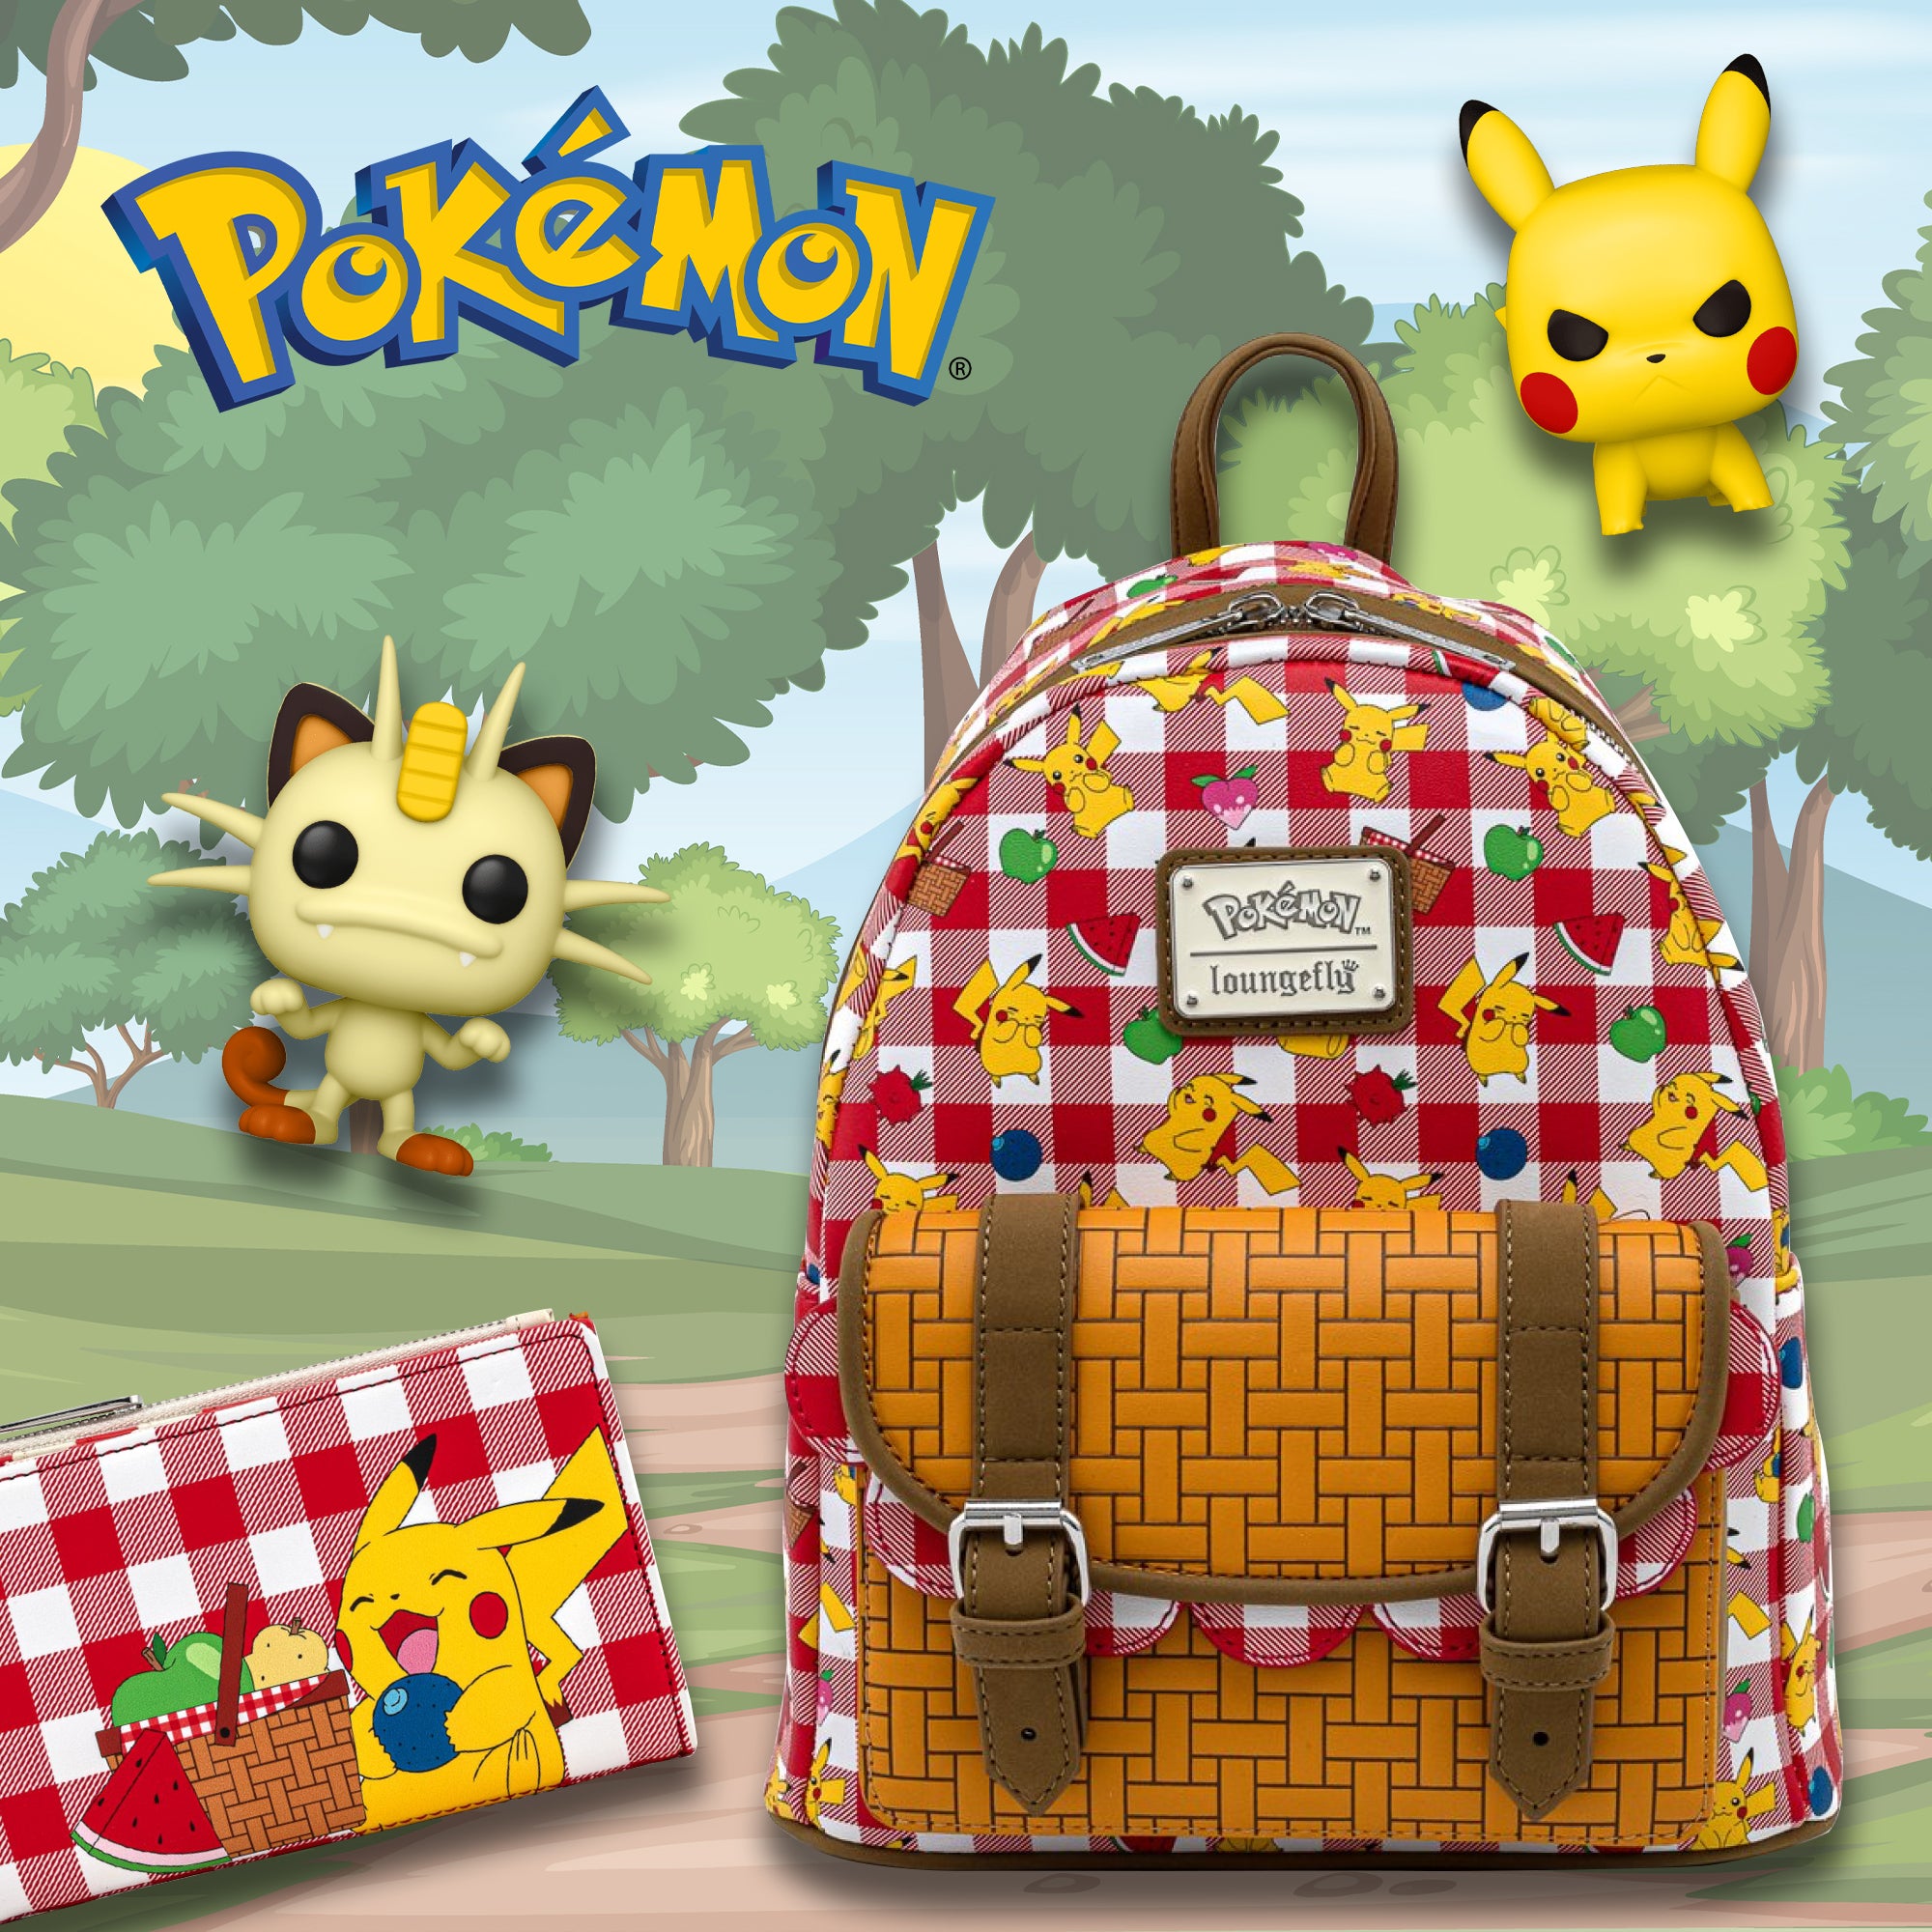 Pokémon Kanto Starter Mini-Backpack - Entertainment Earth